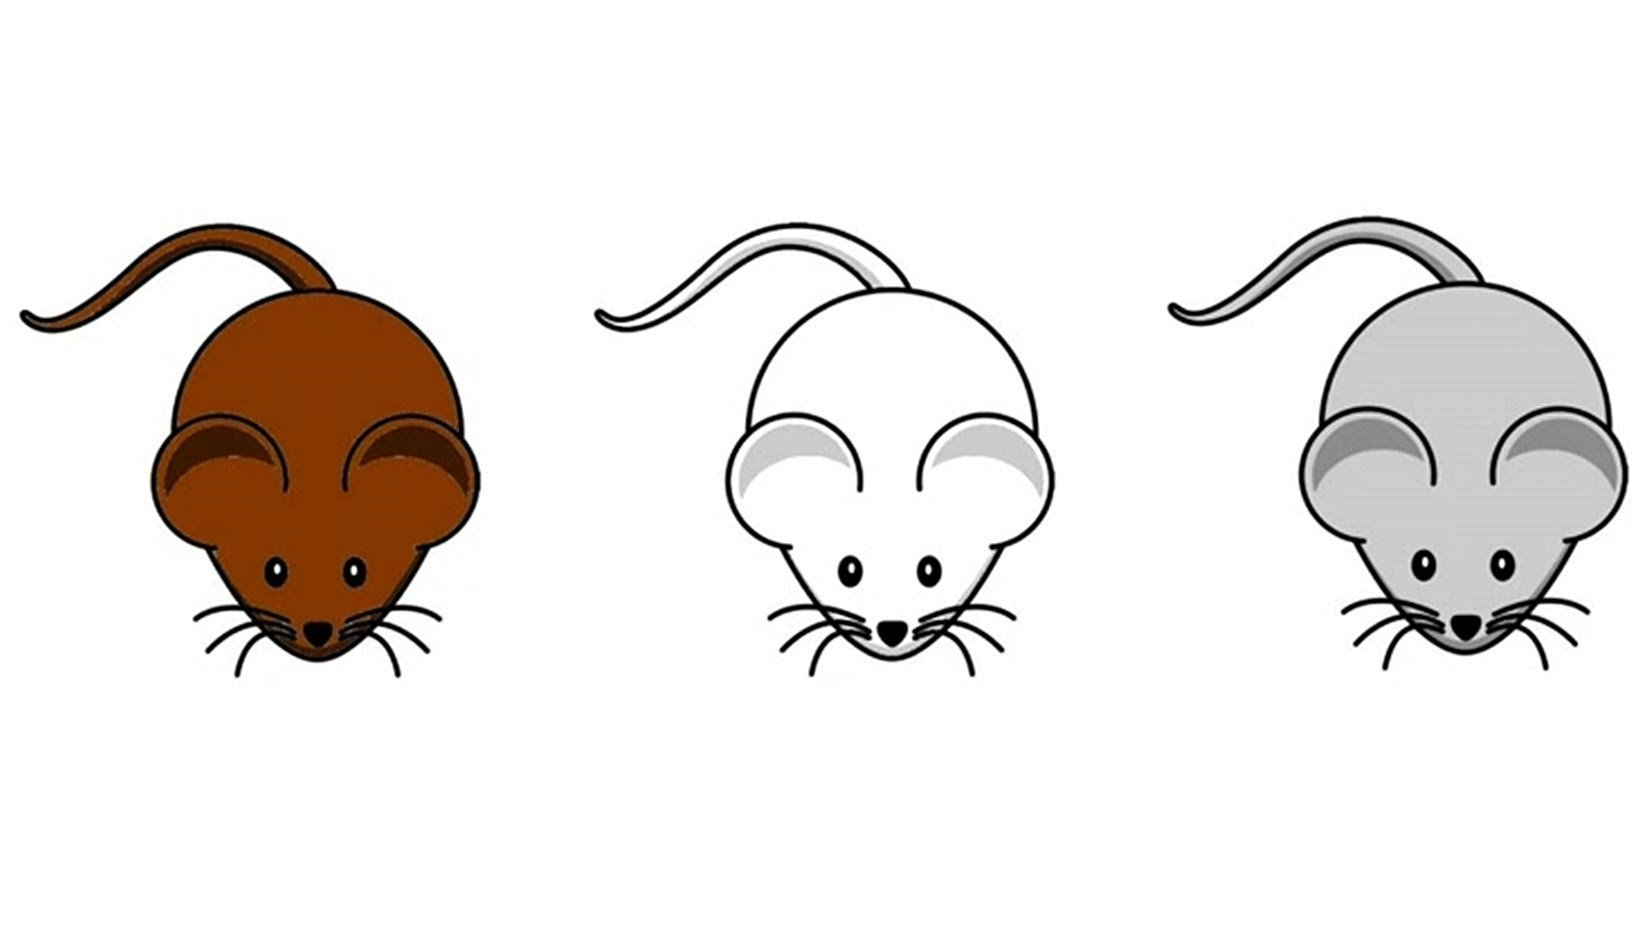 Three mice. Мышь рисунок. Мышь рисунок для детей. Мышка мультяшная. Мышка картинка для детей.